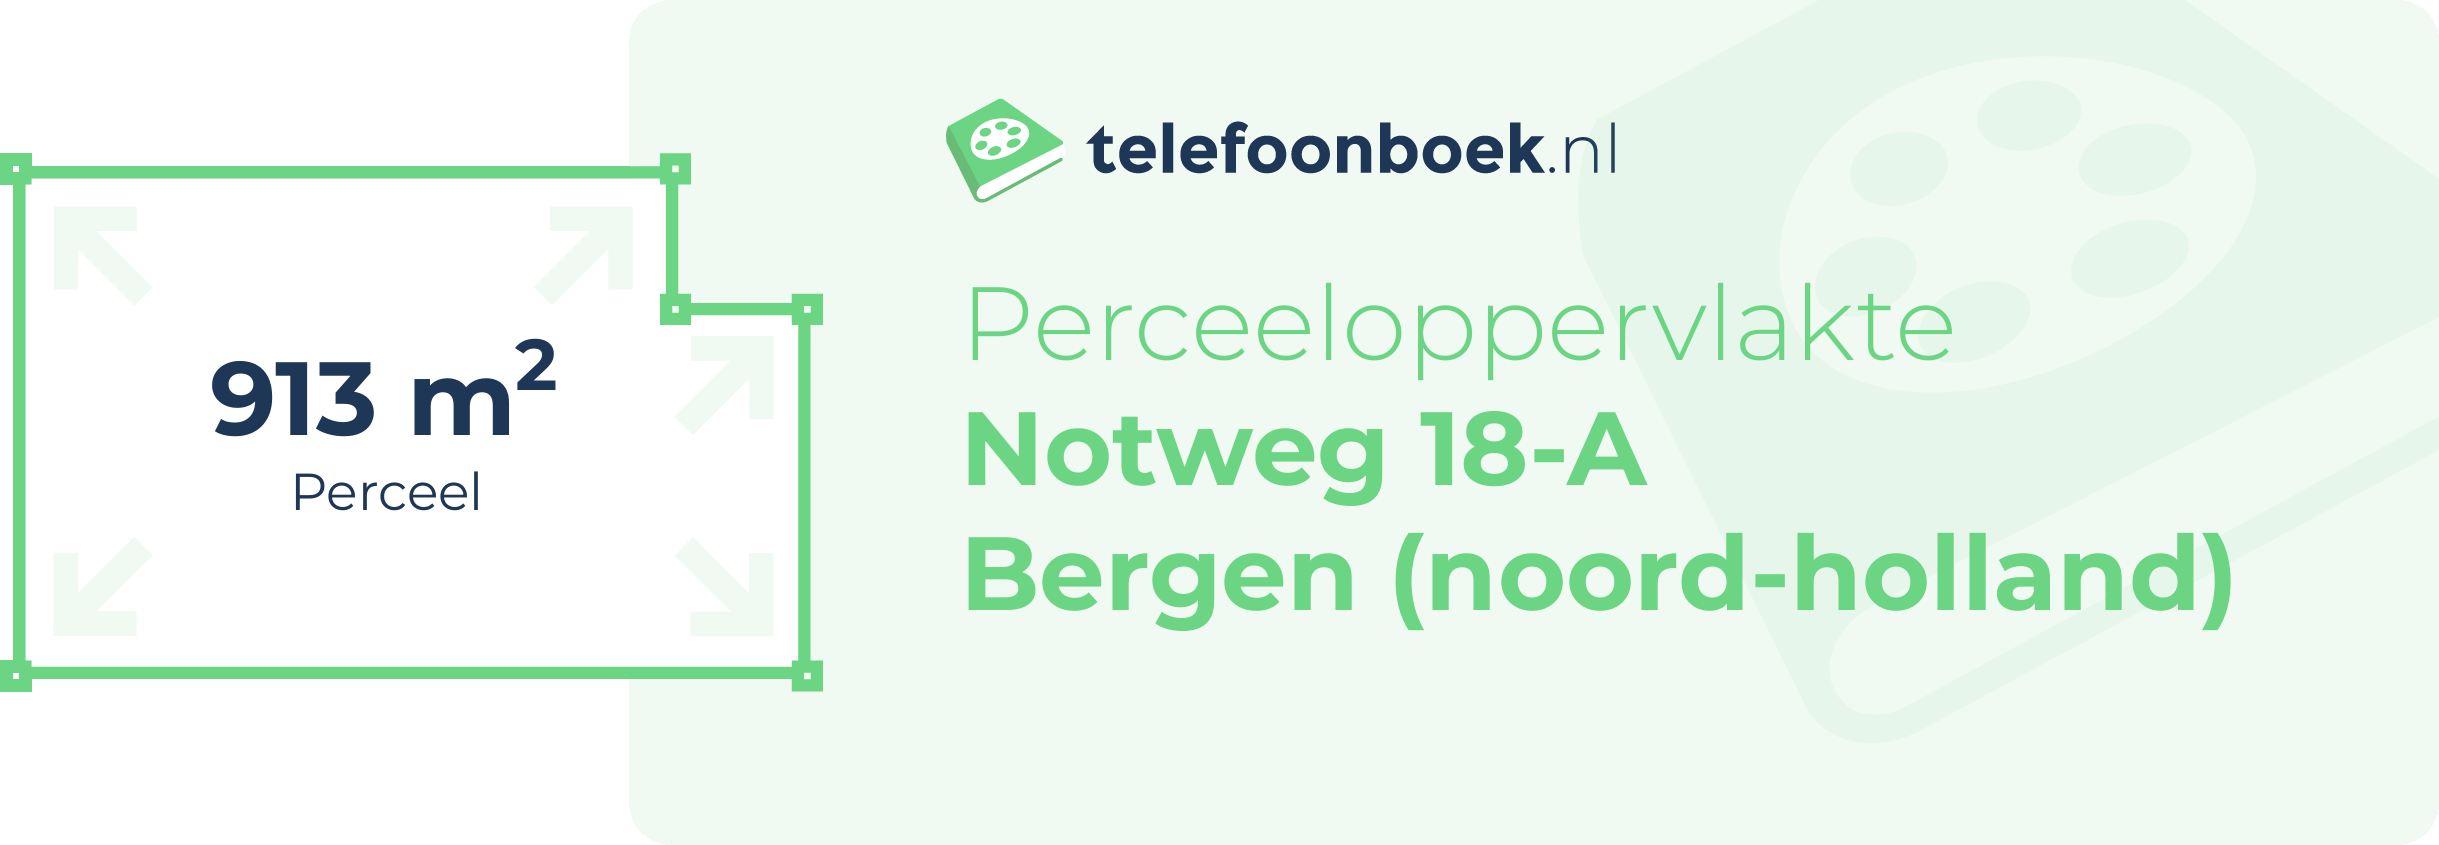 Perceeloppervlakte Notweg 18-A Bergen (Noord-Holland)